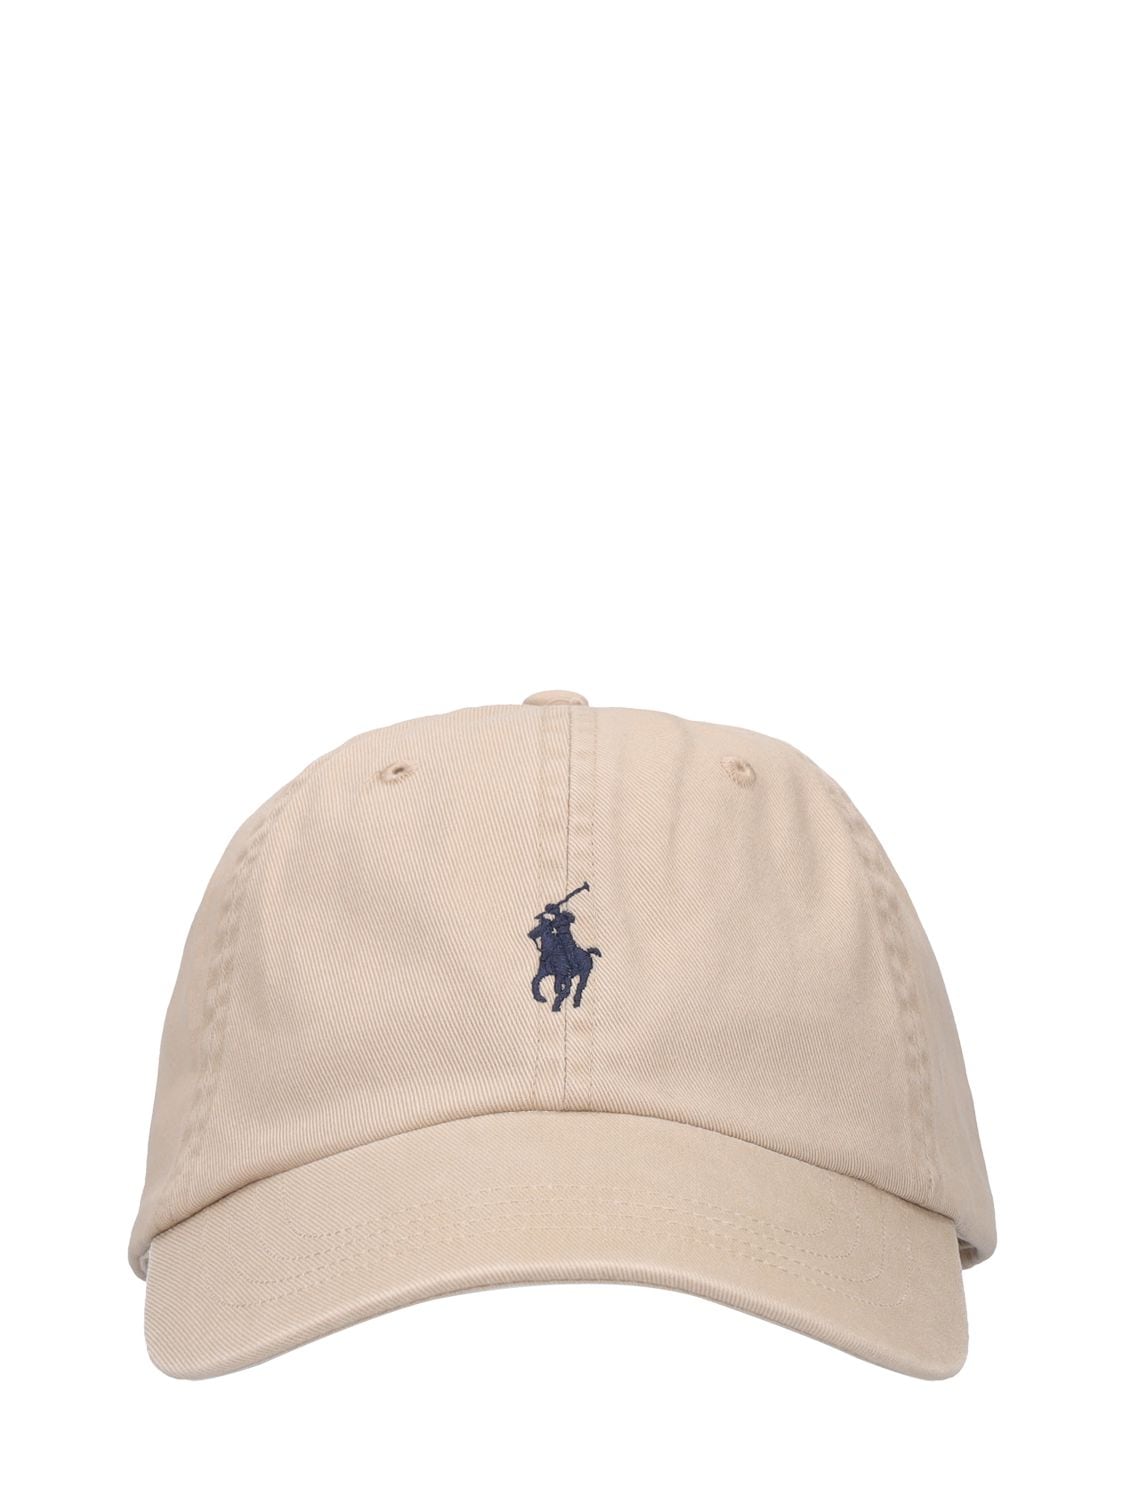 Polo Ralph Lauren Embroidered Logo Cotton Baseball Cap